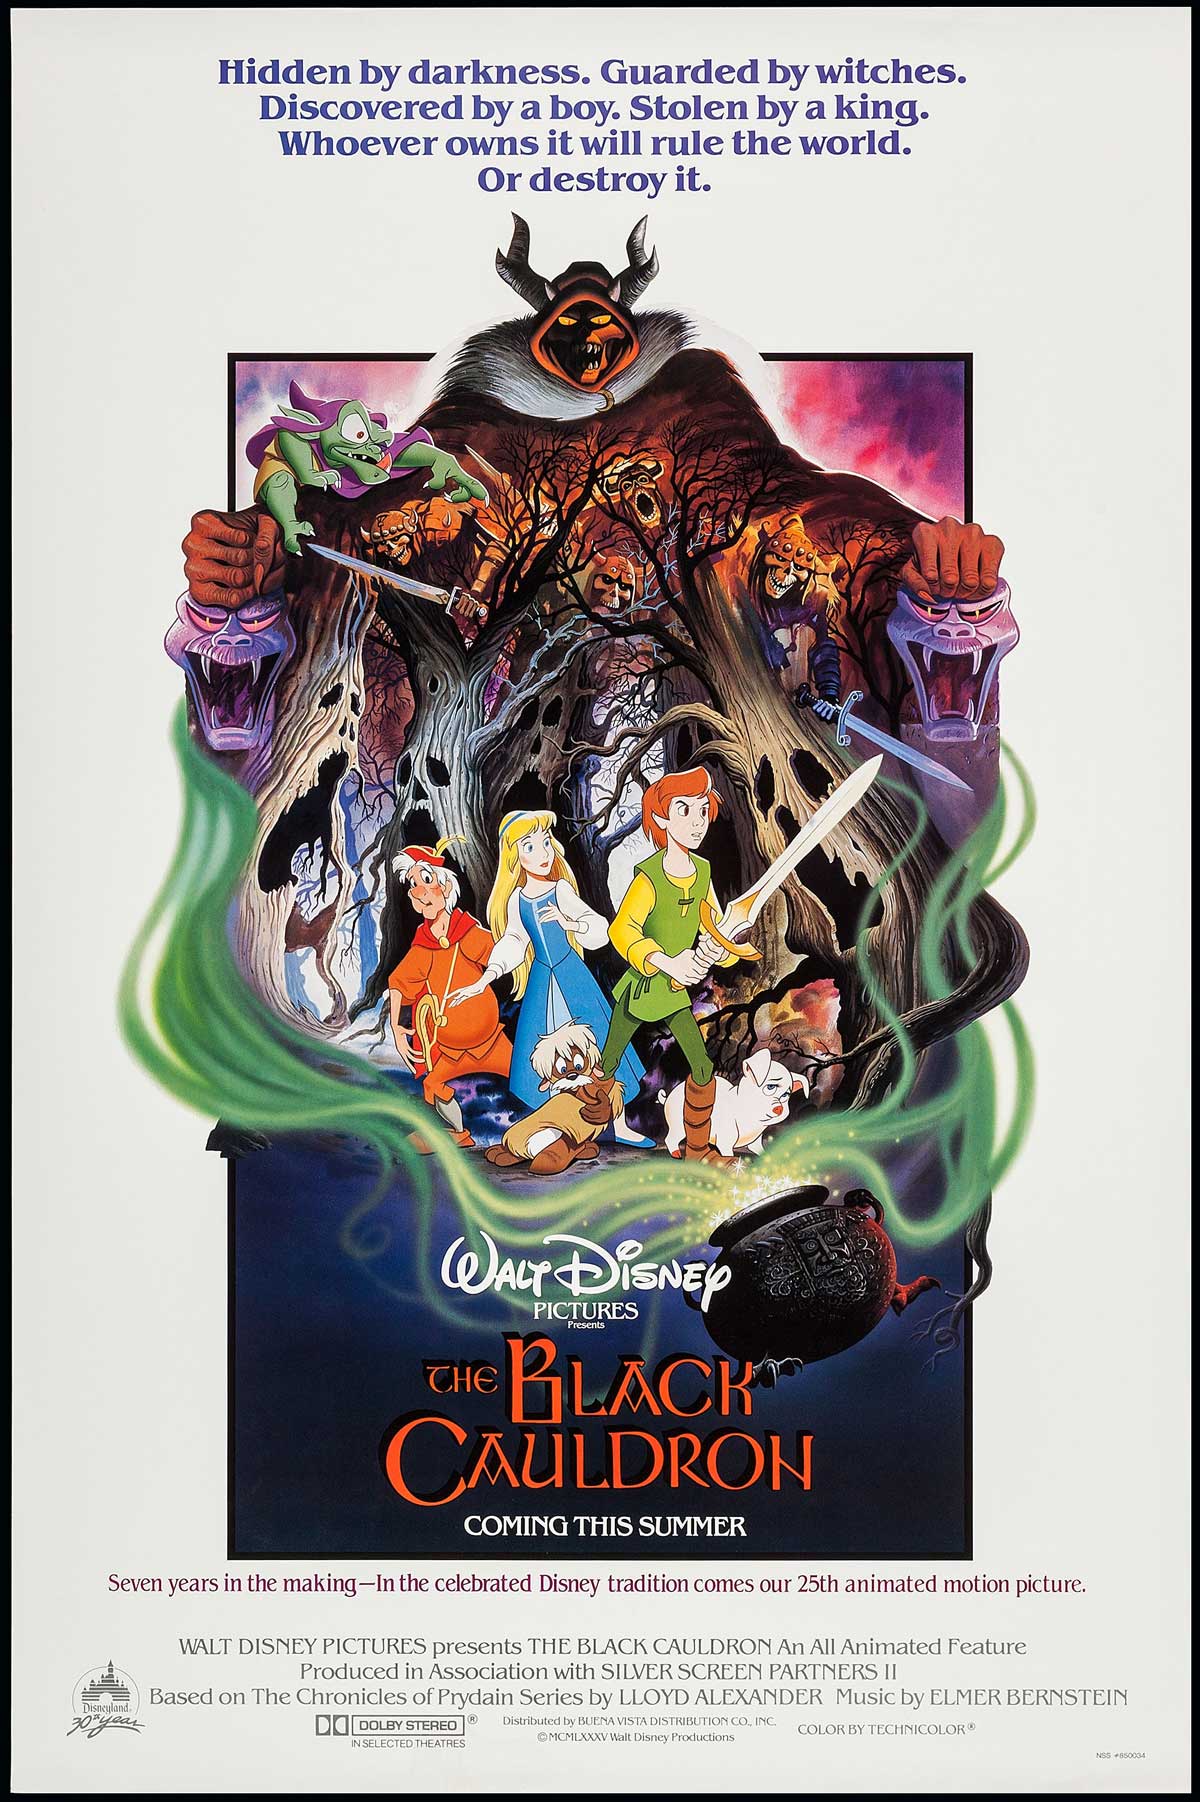 پوستر خوش رنگ و لعاب انیمیشن The Black Cauldron دیزنی